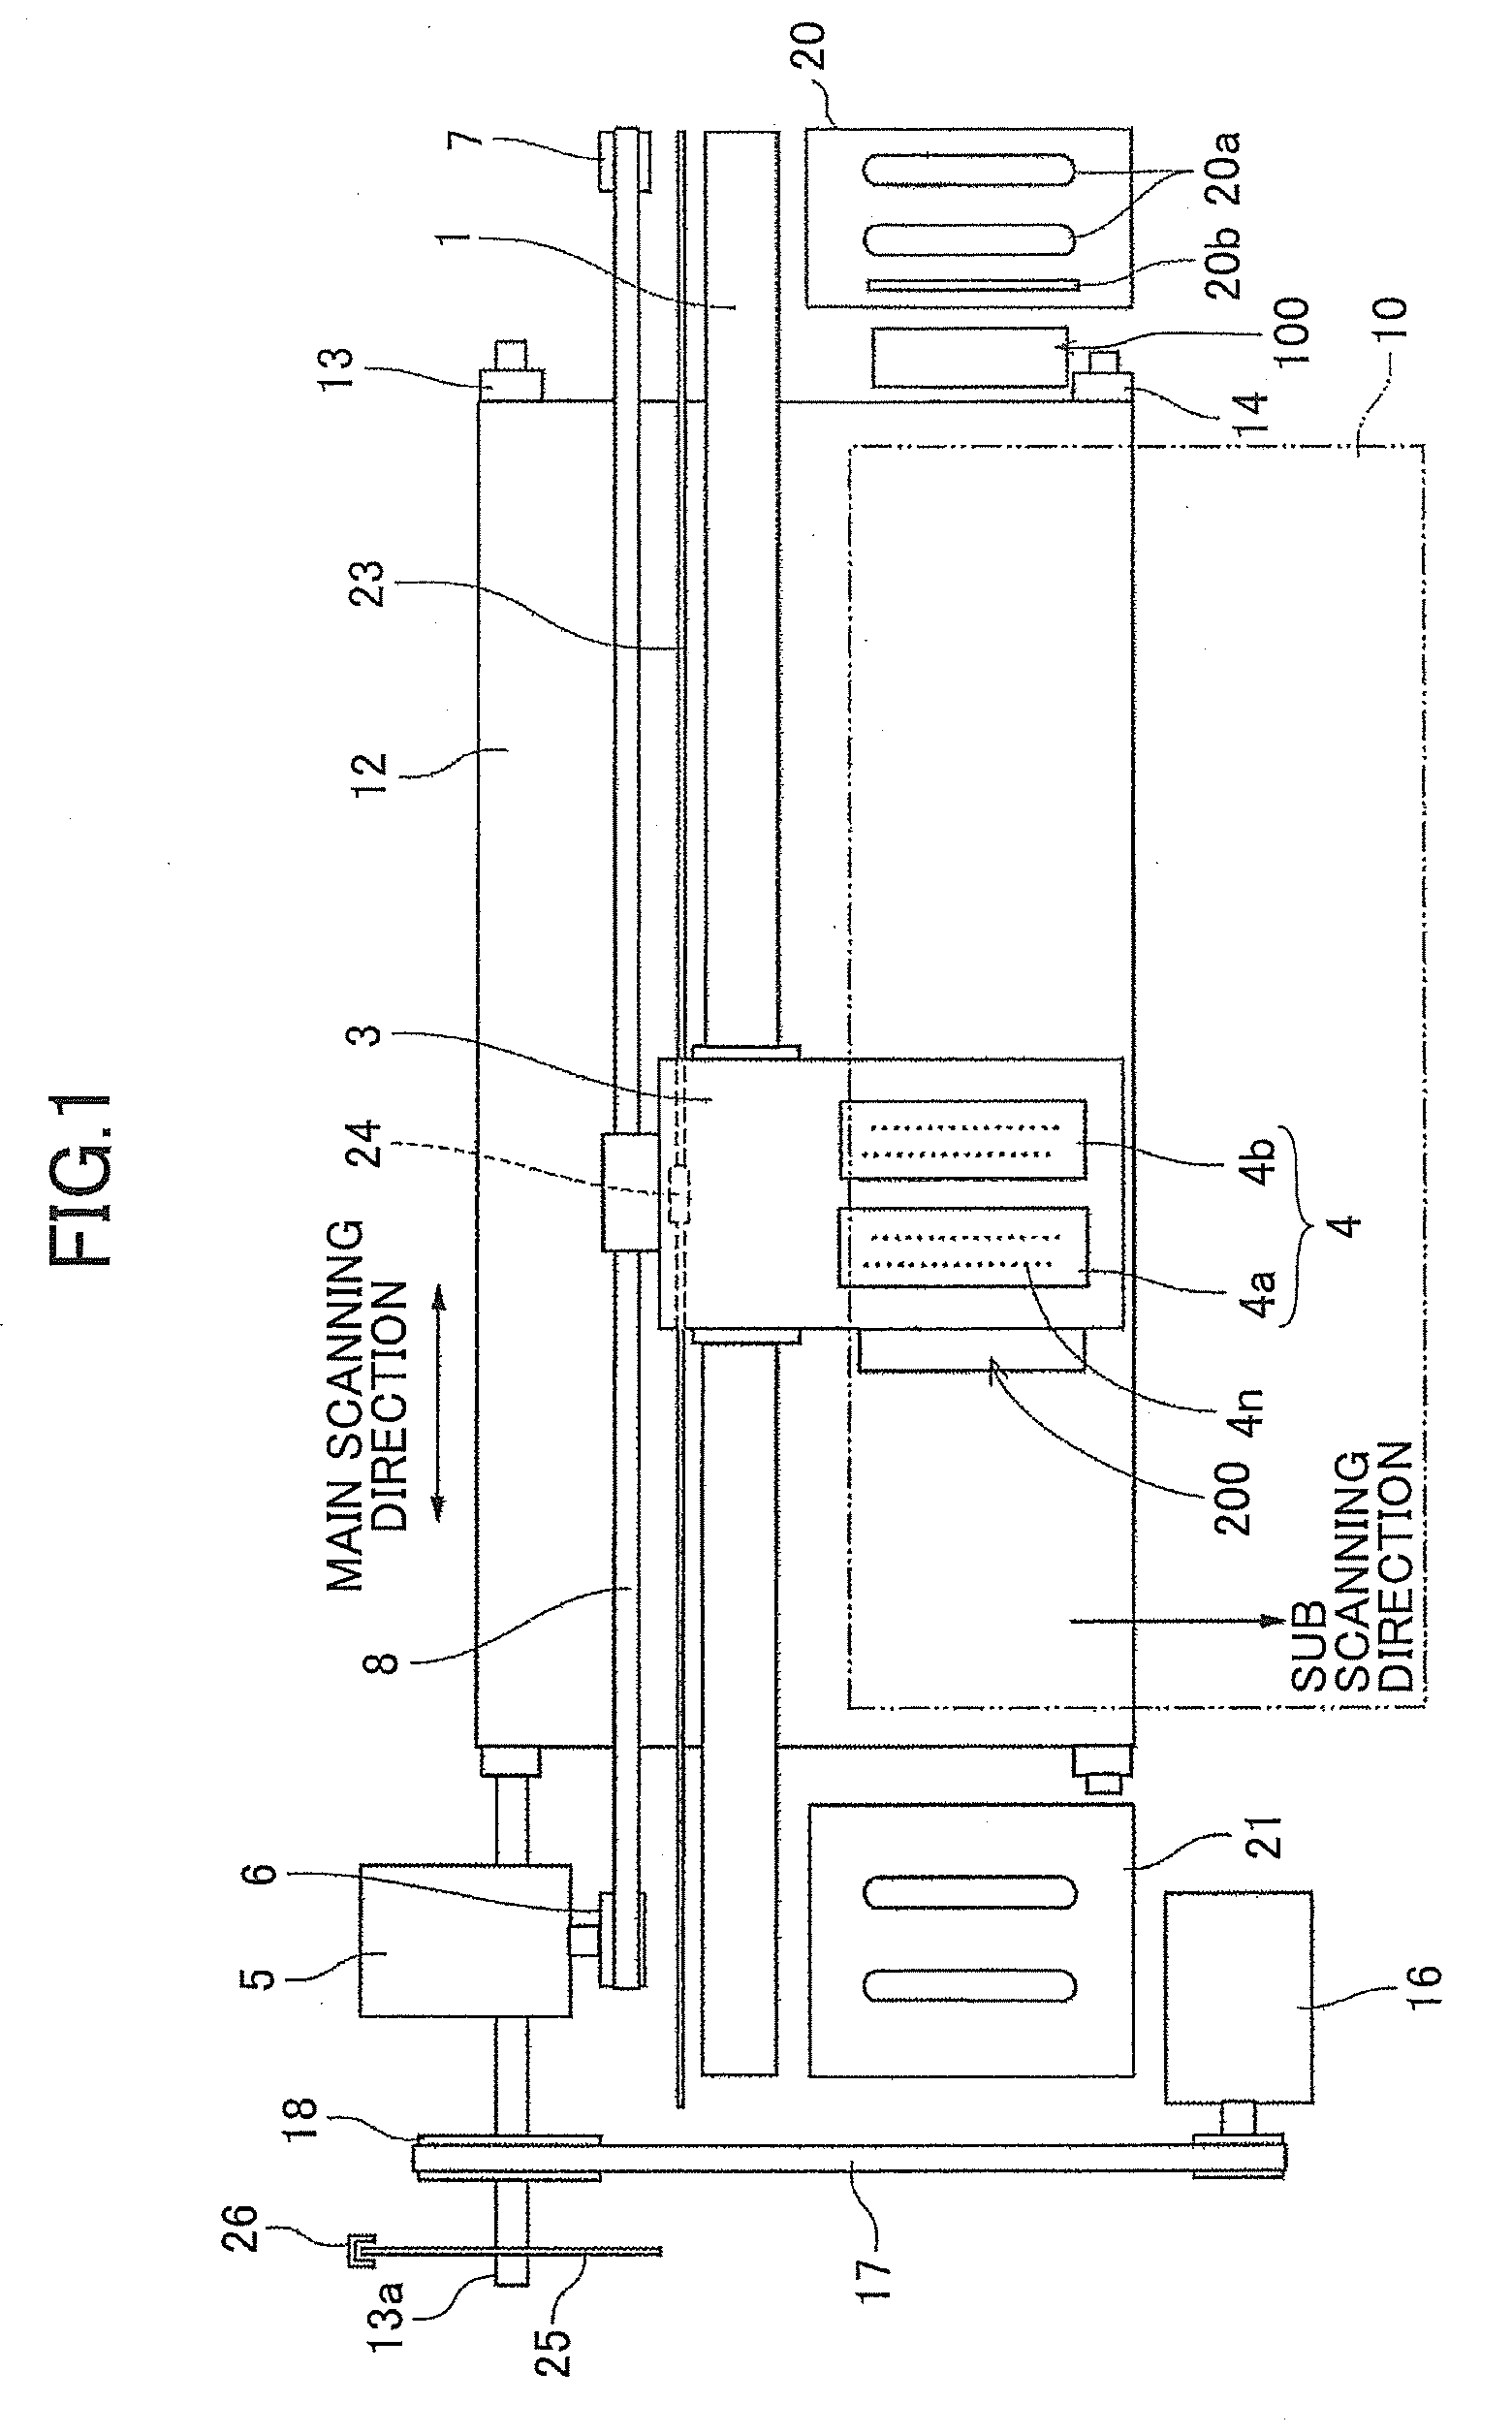 Liquid ejector and liquid ejecting detector